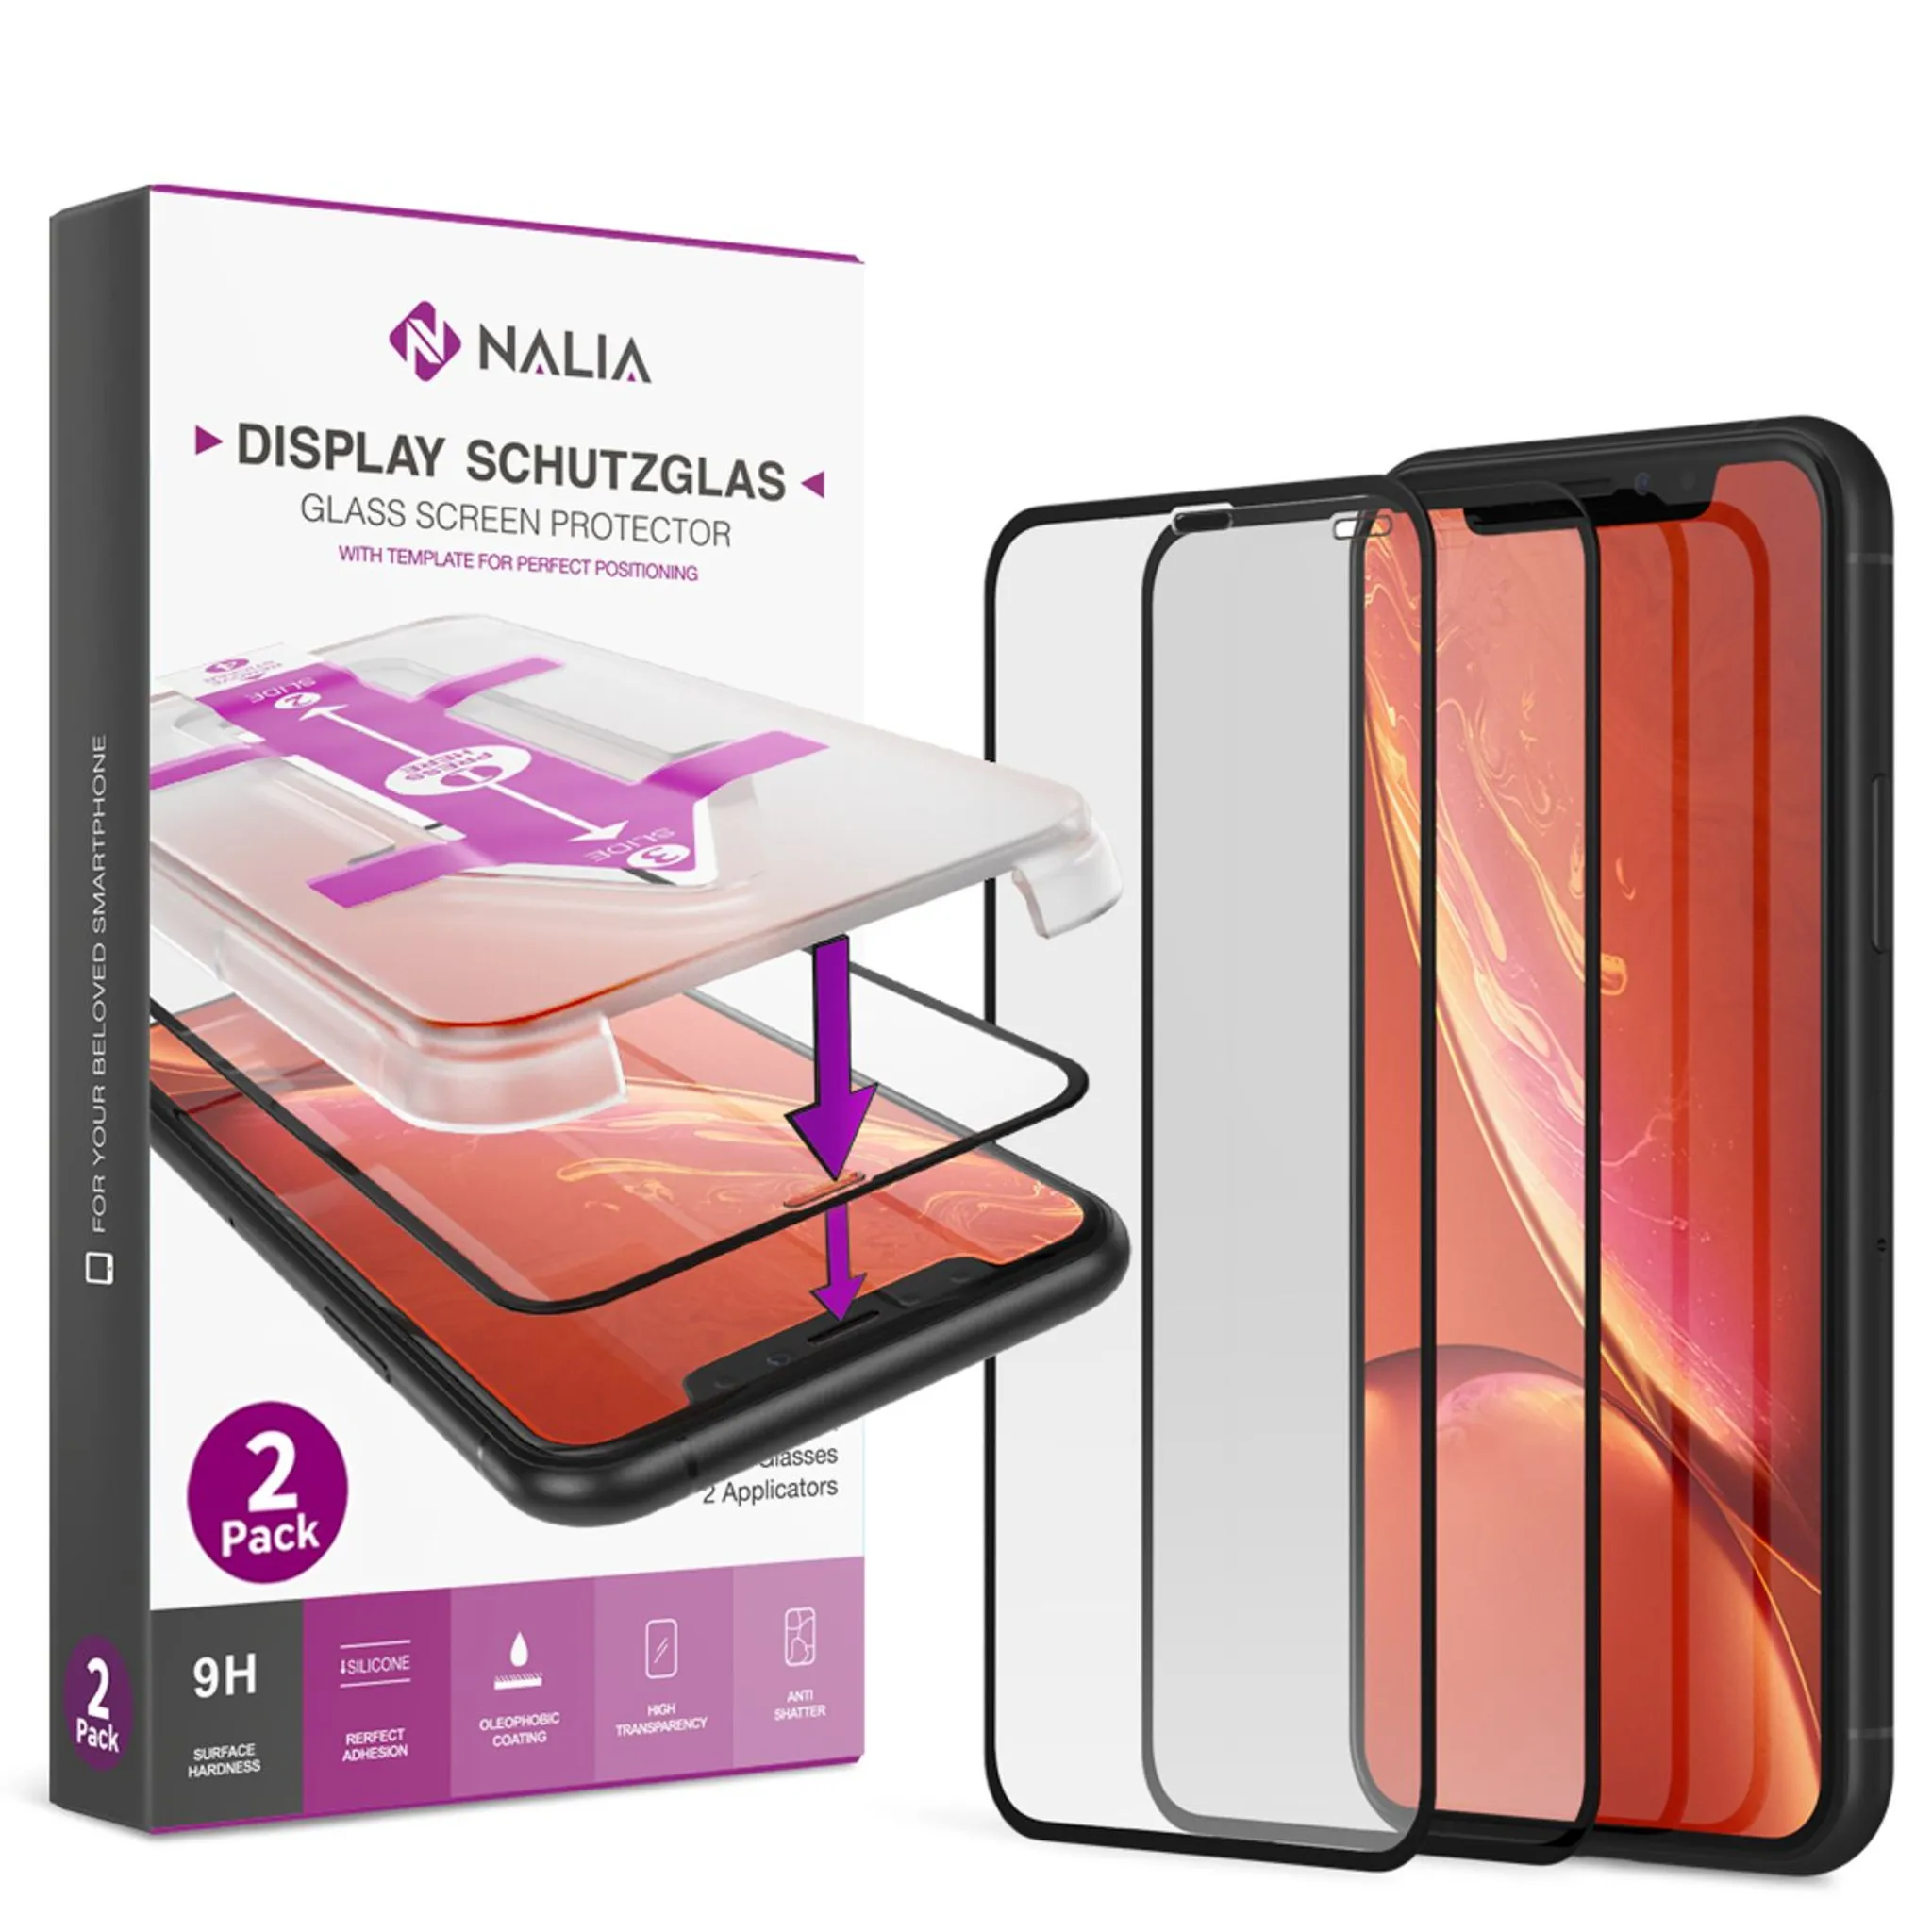 NALIA (2x) Schutzglas & Applikator kompatibel mit iPhone 11 / Xr, 9H  Full-Screen Glasfolie mit Schablone für einfache Installation, hoher Handy  Displayschutz Tempered Glass